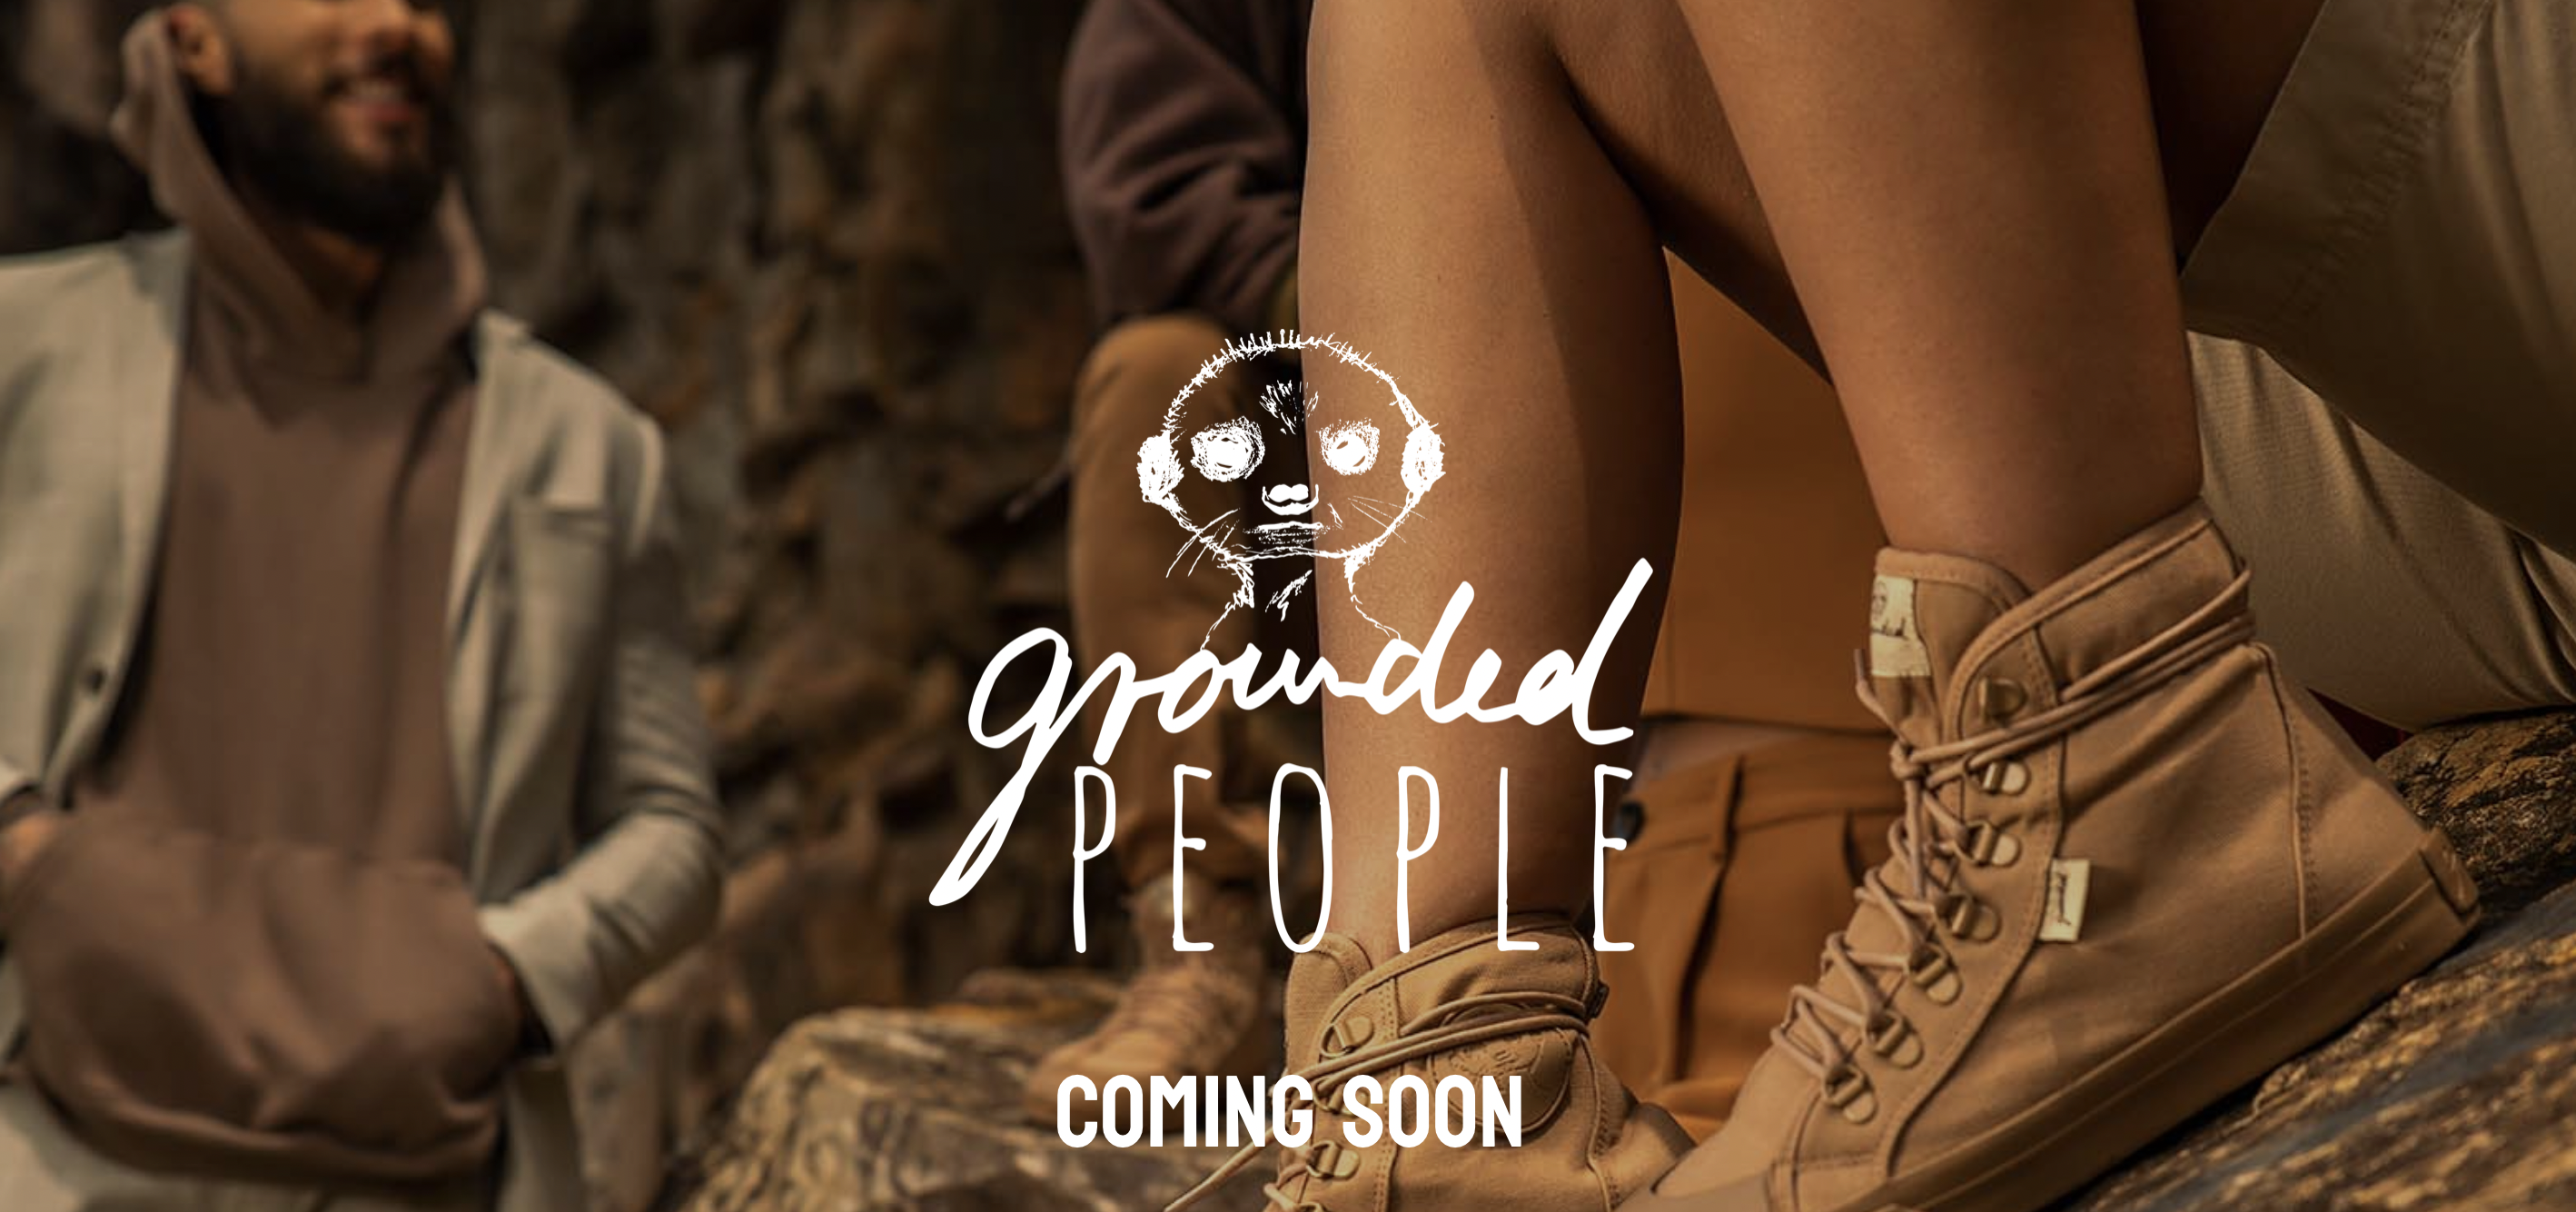 加拿大纯素鞋履品牌 Grounded People 完成 250万美元新一轮融资